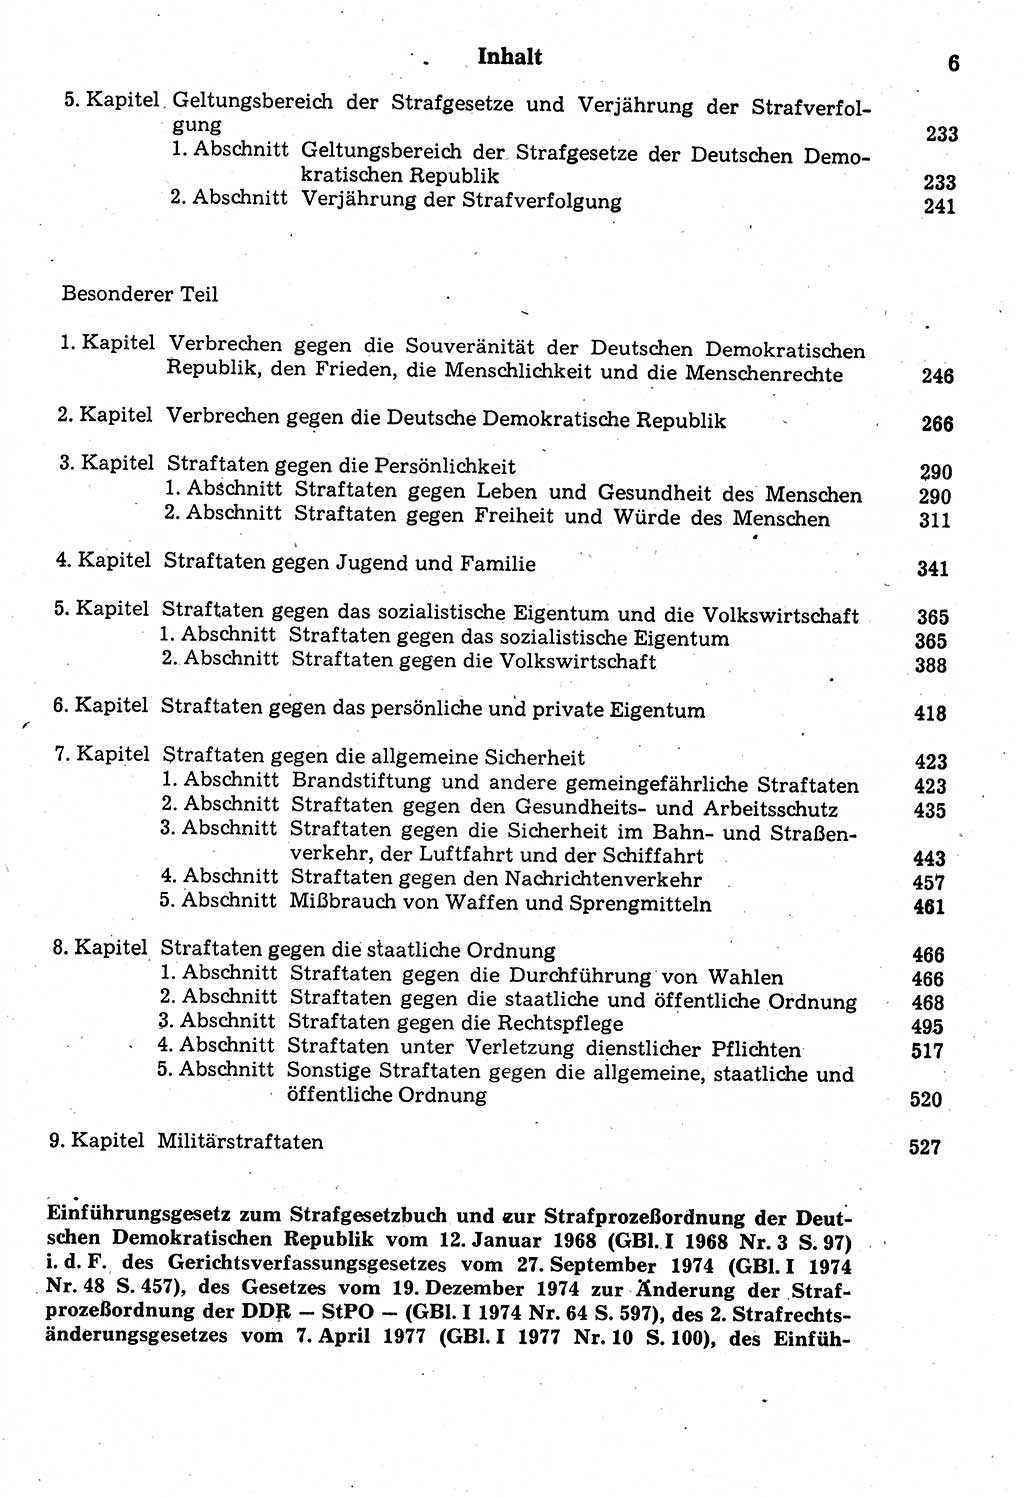 Strafrecht der Deutschen Demokratischen Republik (DDR), Kommentar zum Strafgesetzbuch (StGB) 1987, Seite 6 (Strafr. DDR Komm. StGB 1987, S. 6)